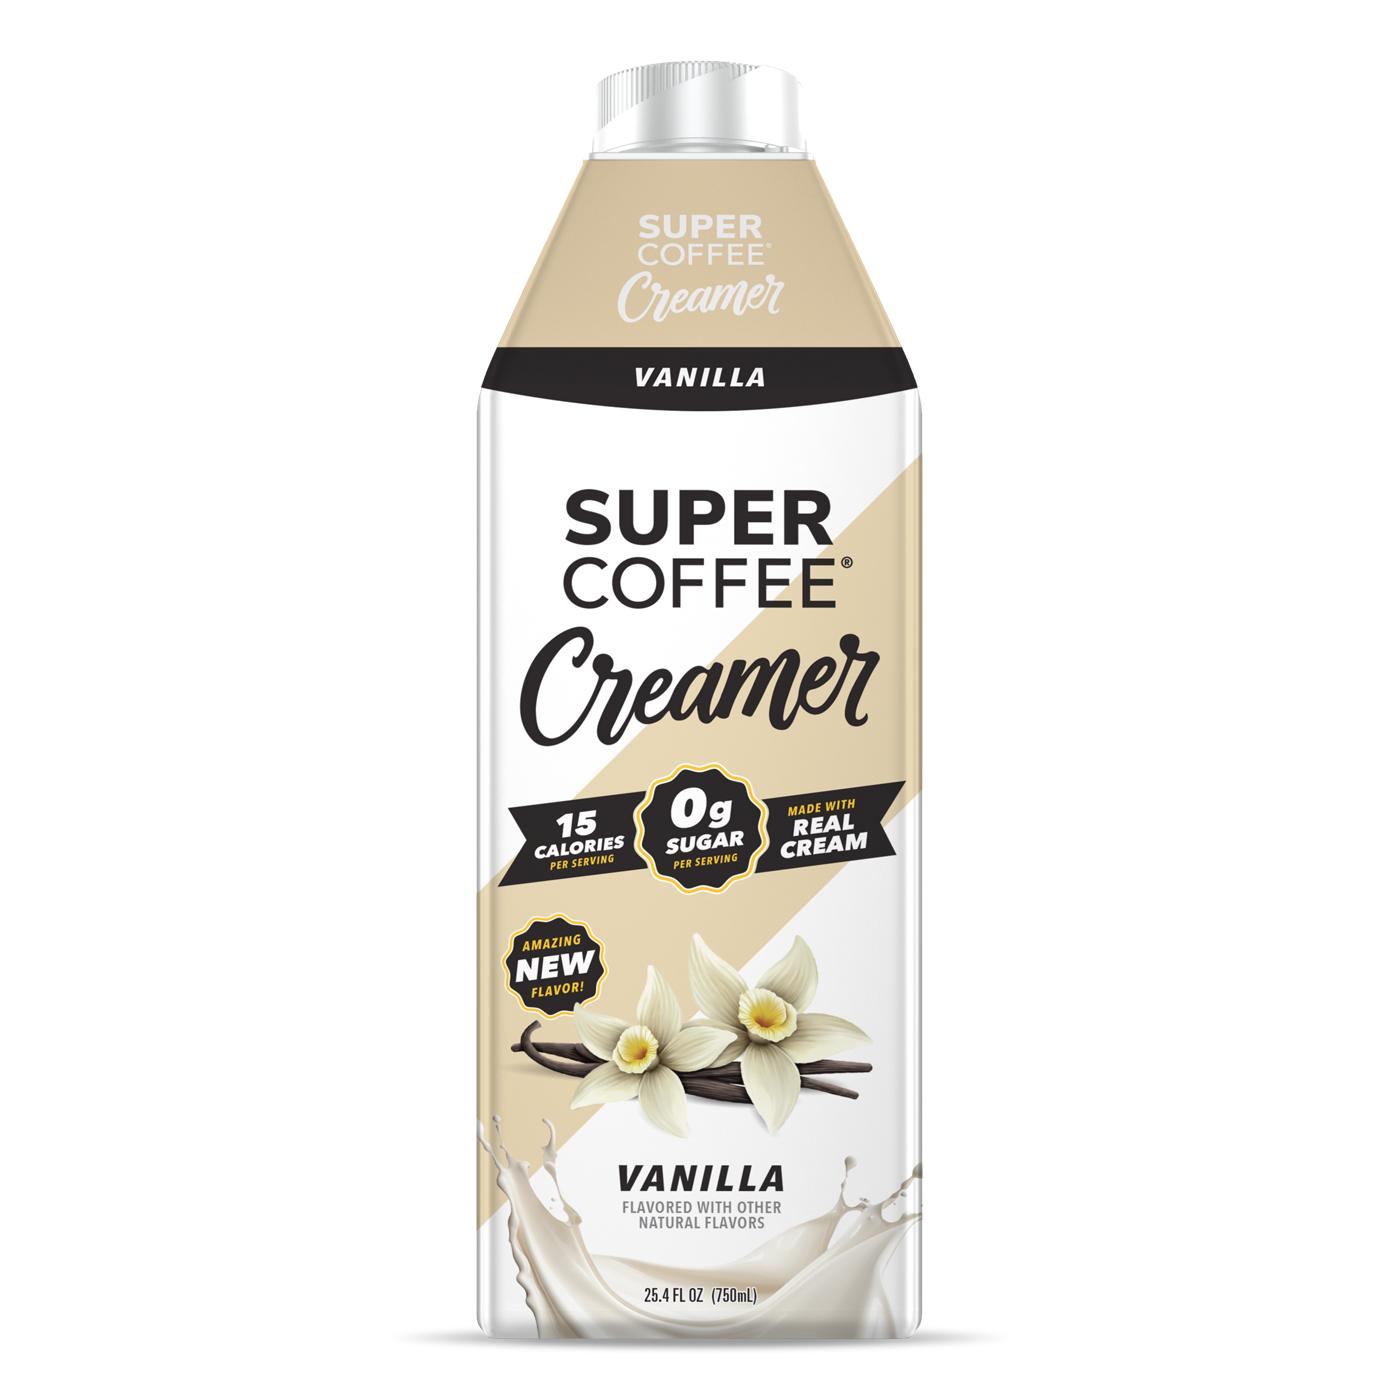 Super Coffee Super Creamer - Vanilla; image 1 of 3